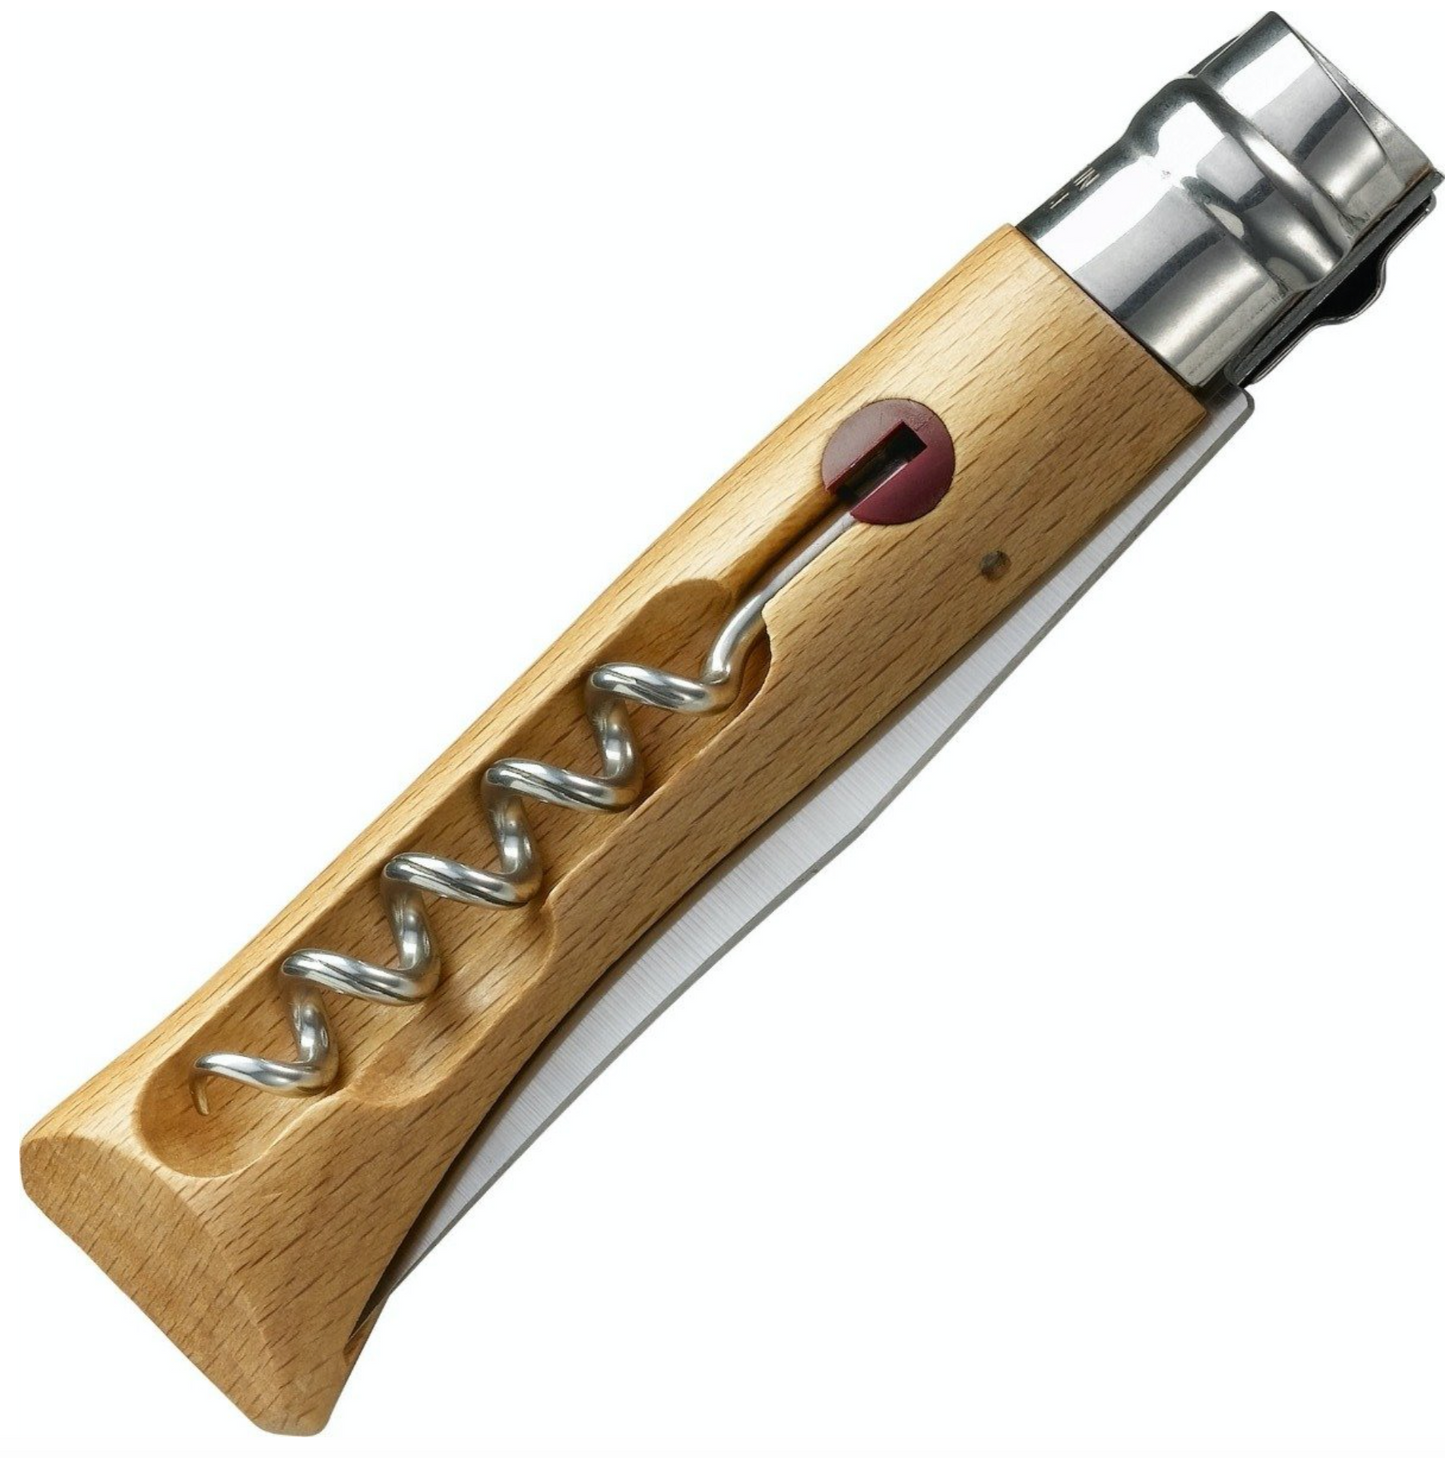 No. 10 Corkscrew Blade